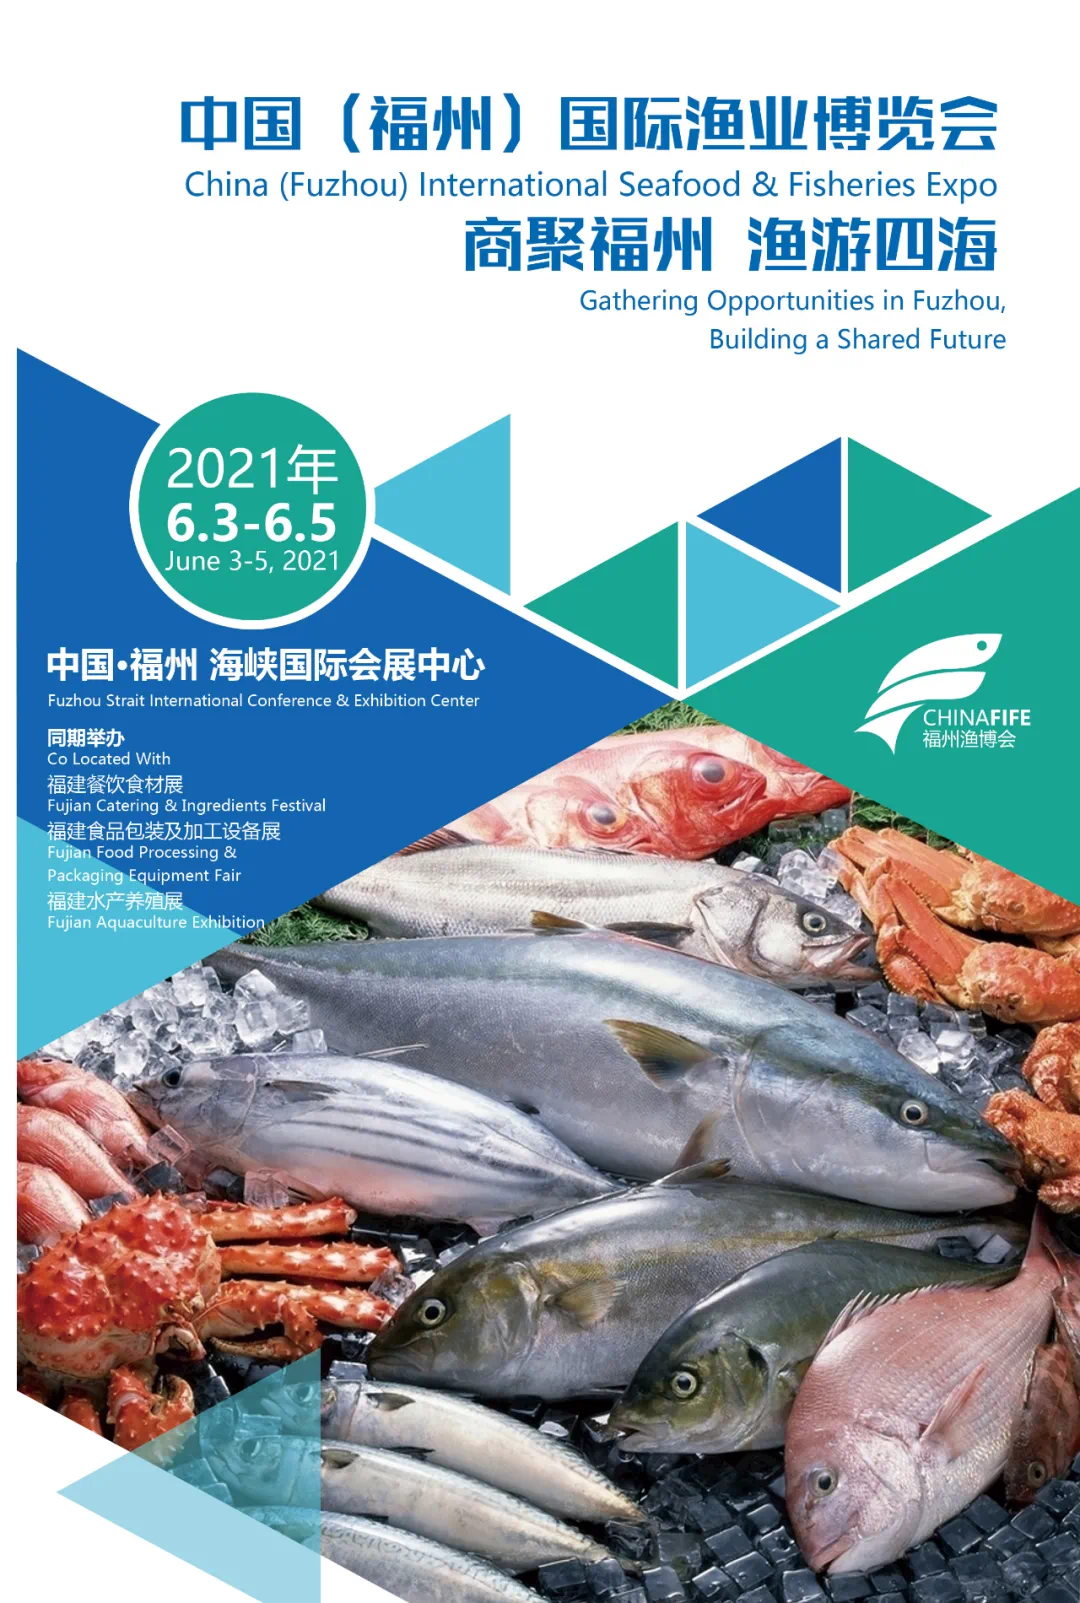 海洋建设，福建未来可期！福州渔博会与您共谱发展新篇章